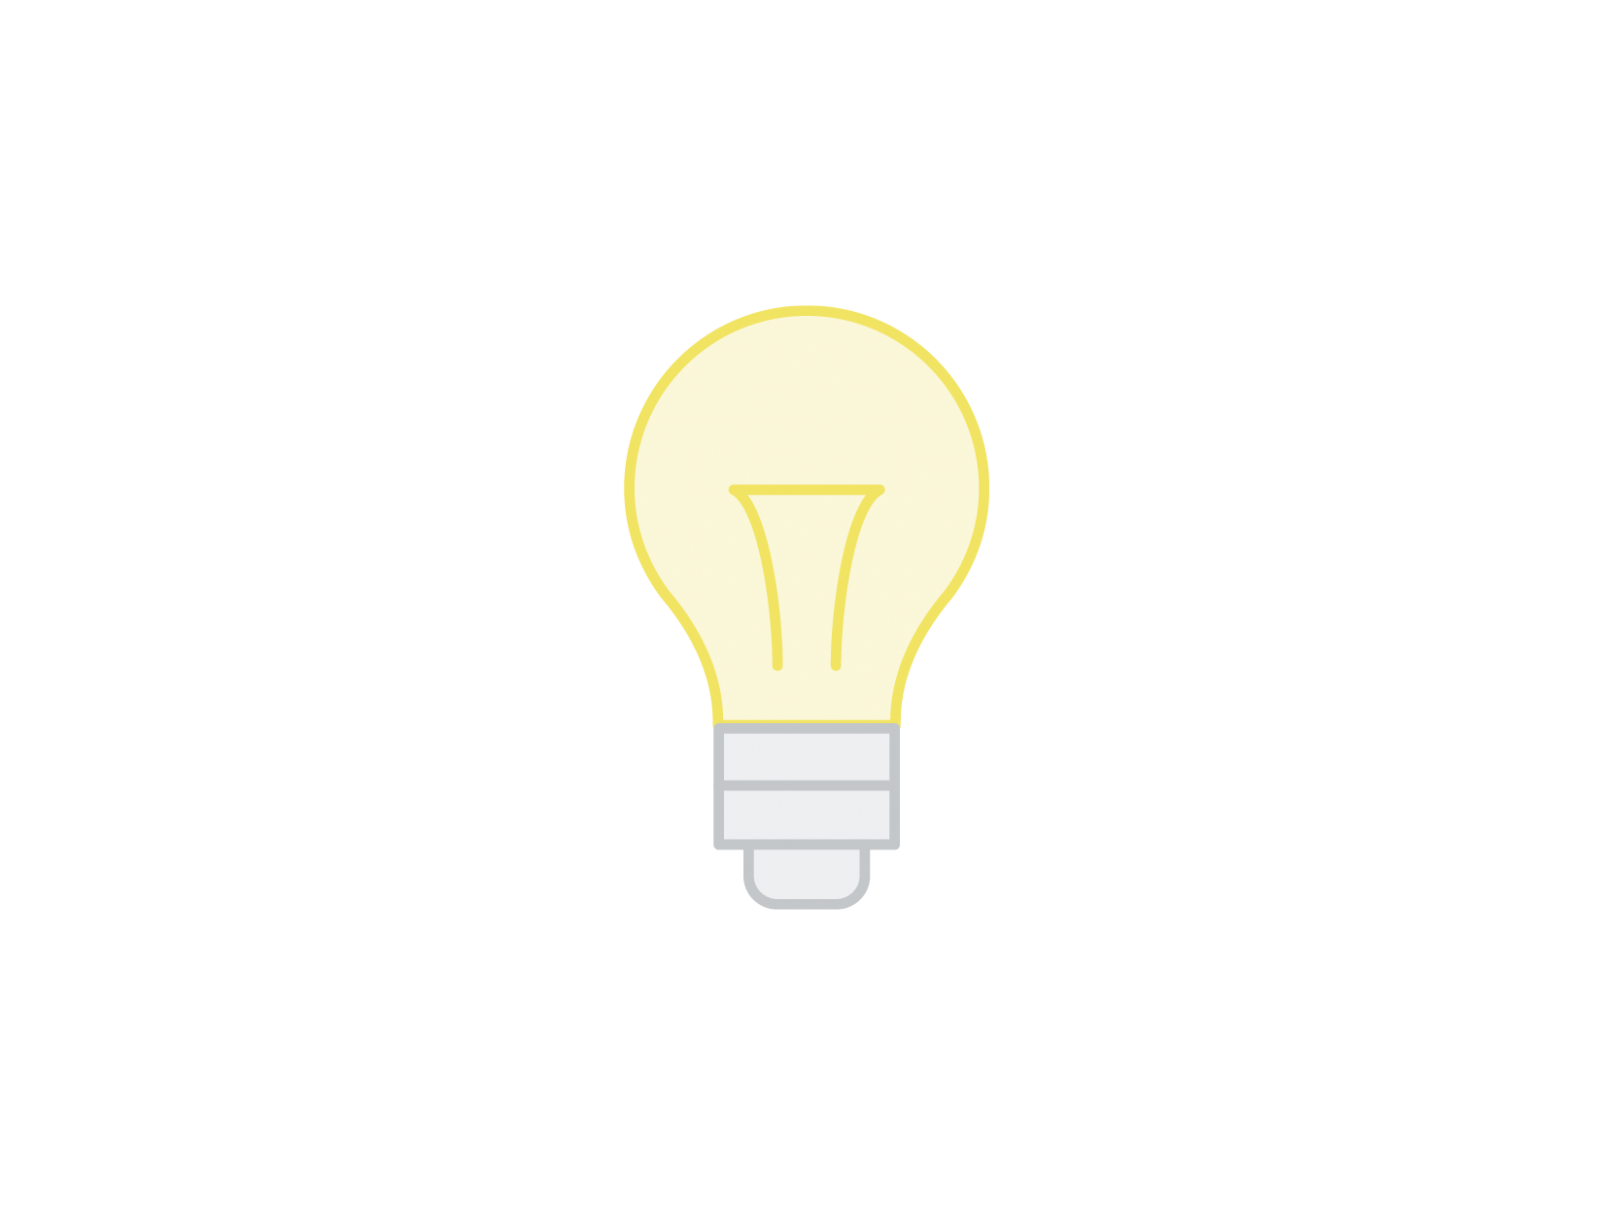 Icon representing a light bulb